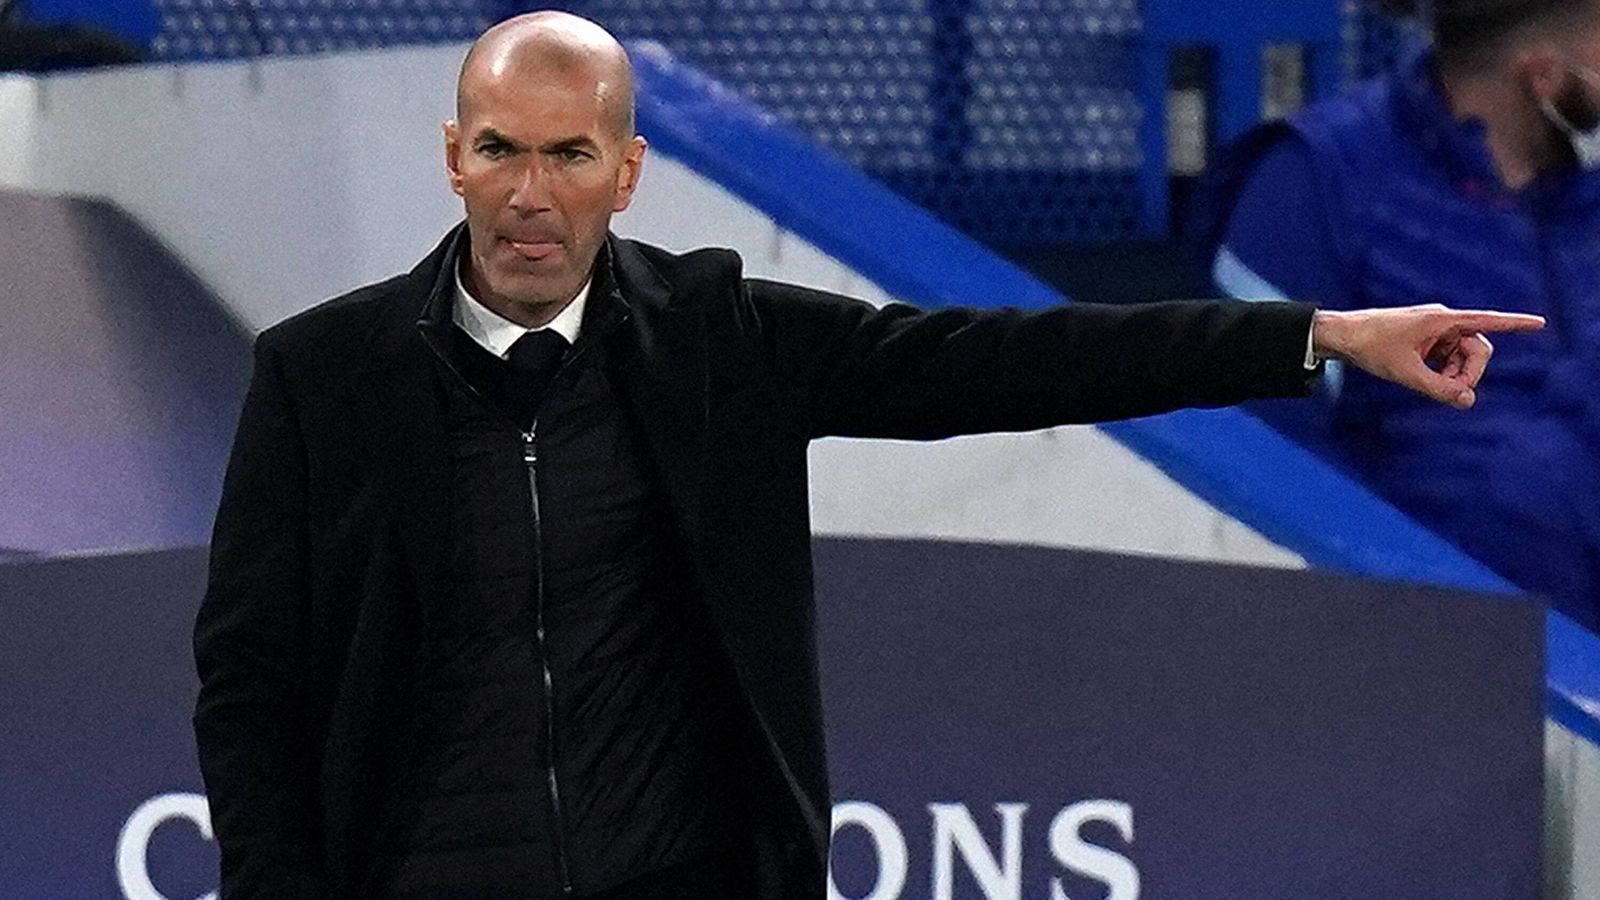 
                <strong>Zinedine Zidane (vereinslos)</strong><br>
                Zinedine Zidane hat sich als Trainer bis zu Real Madrid hochgearbeitet. Auf seinem Weg dahin fungierte er unter anderem als Co-Trainer von Carlo Ancelotti, der die "Königlichen" derzeit coacht. Vor allem die erste Amtszeit von Zidane bei den Spaniern verlief erfolgreich – so geht zum Beispiel drei Mal der Gewinn der Champions League auf sein Konto. Die Trennung im Mai 2021 nach der zweiten Amtszeit des Franzosen und einer erfolglosen Saison verlief allerdings nur an der Oberfläche ohne Nebengeräusche. Seitdem hat der 50-Jährige kein Traineramt mehr übernommen – dies könnte sich eventuell bald ändern.
              